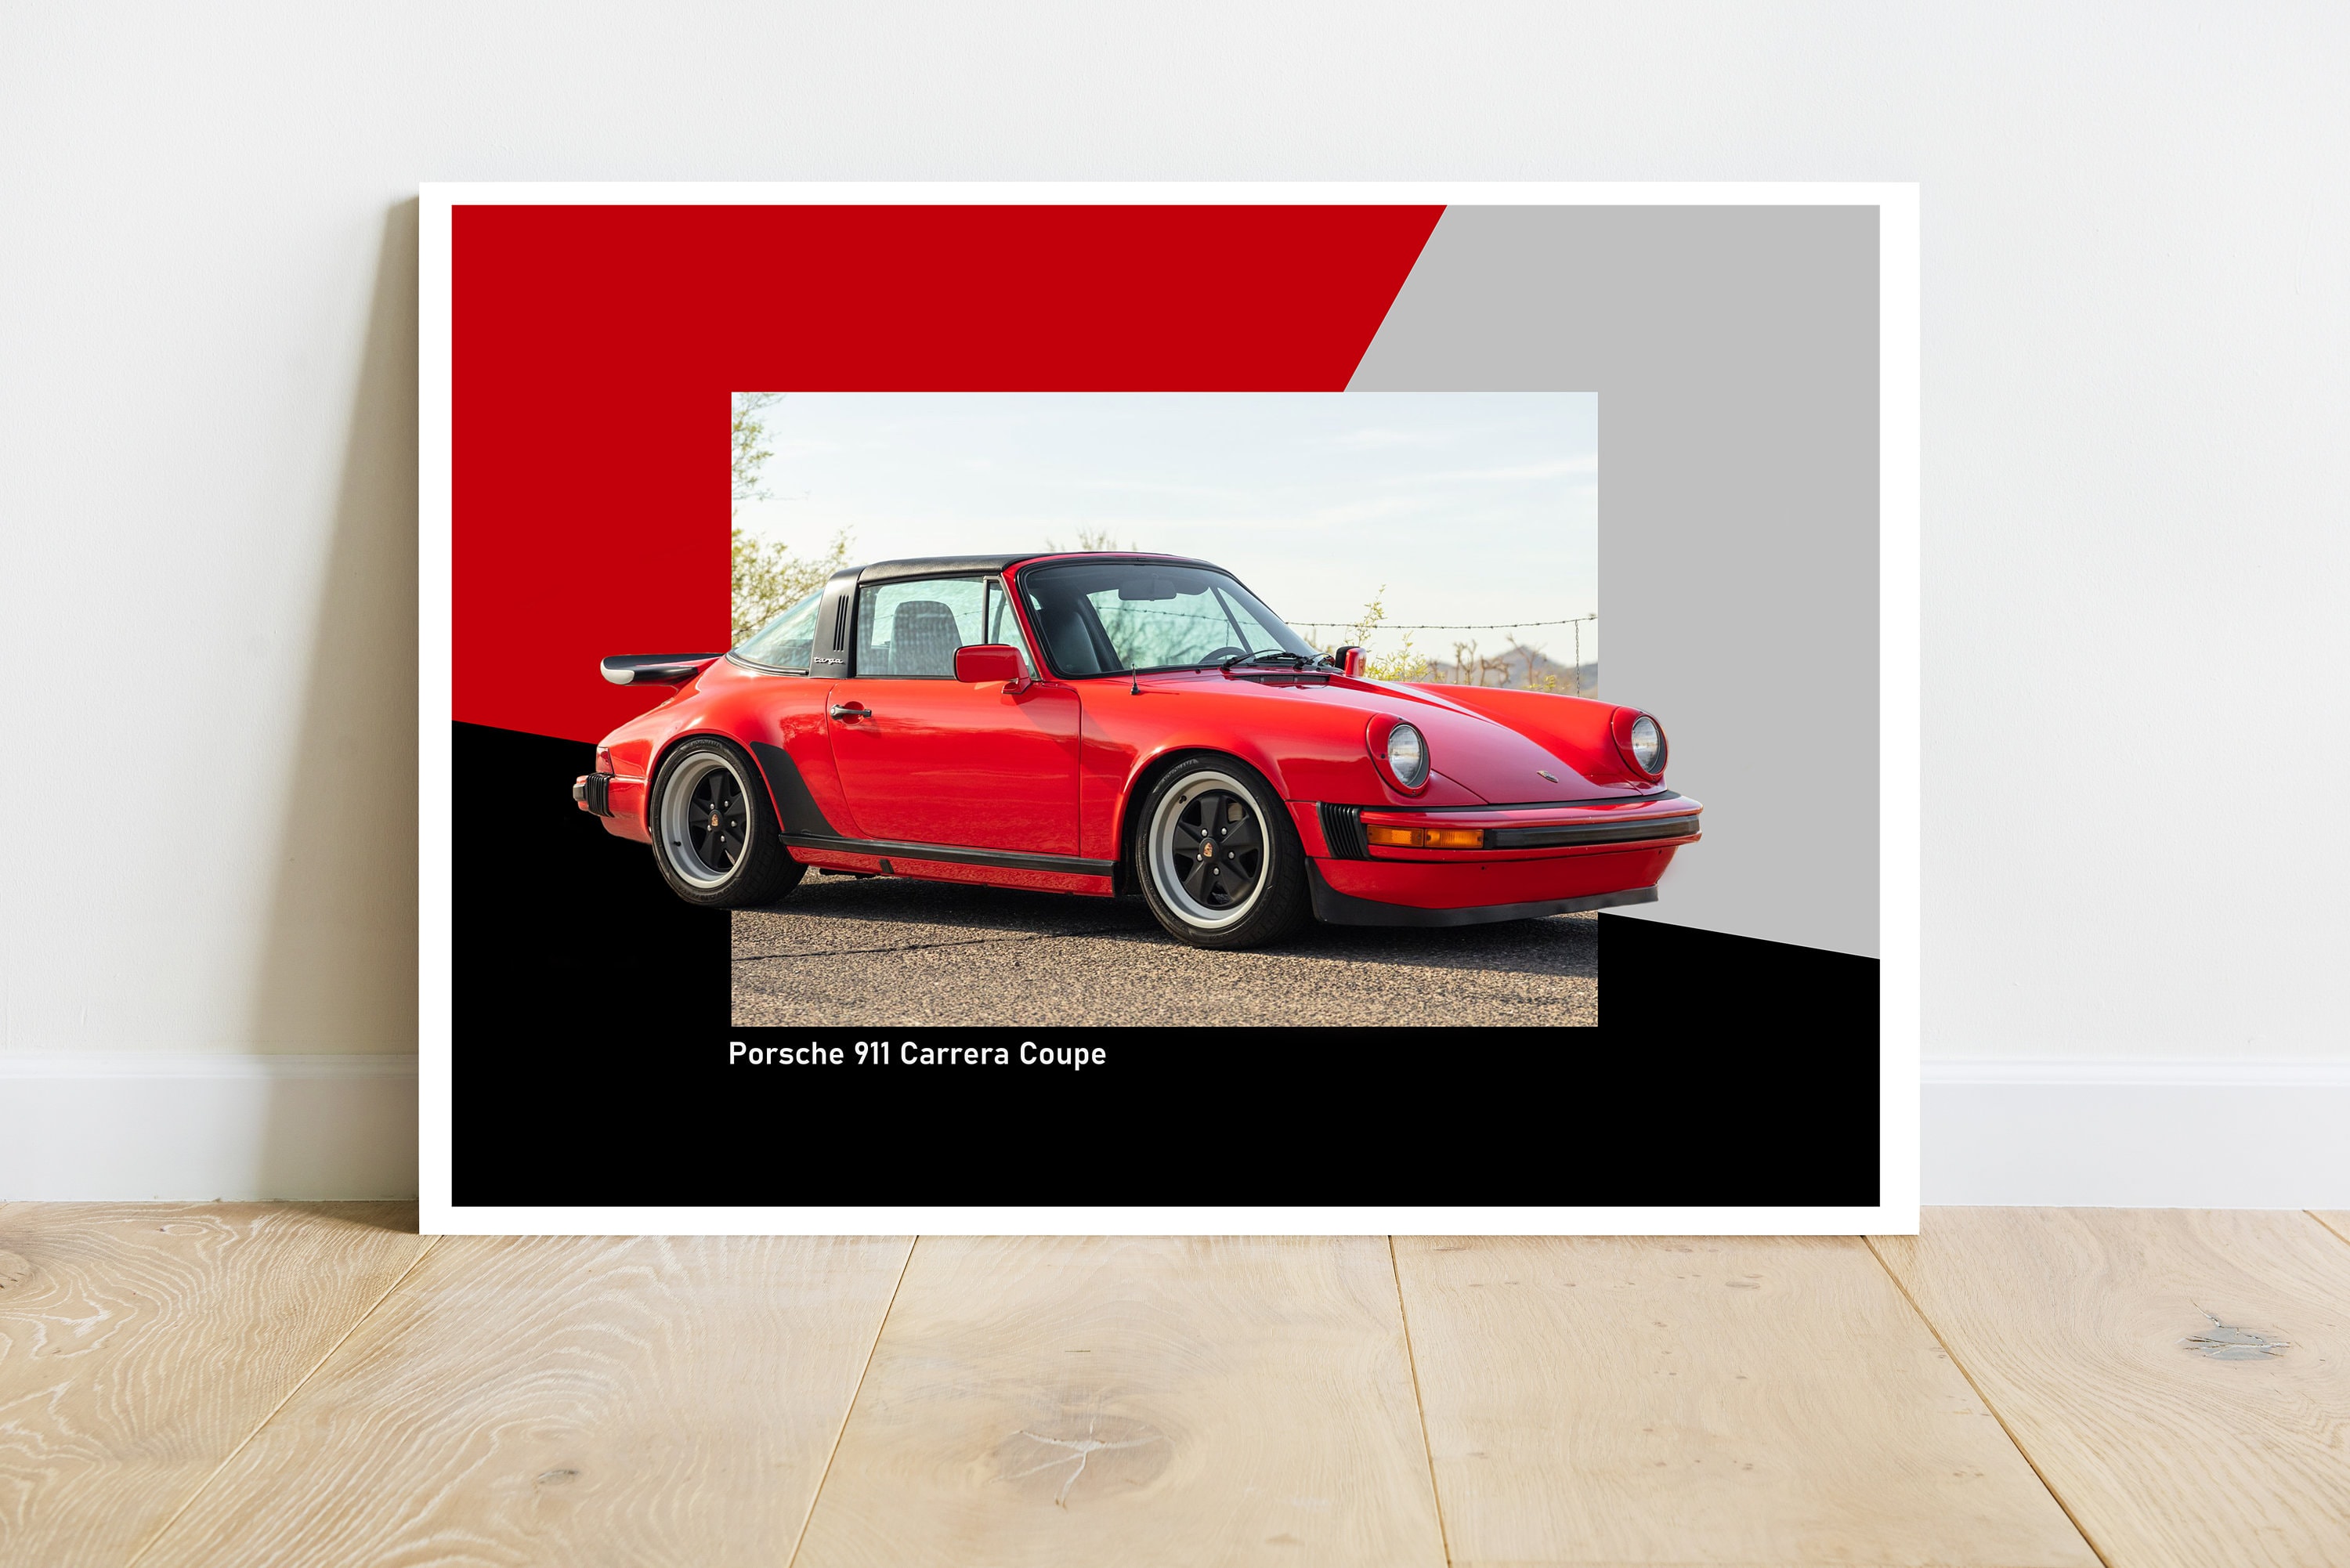 Poster - Porsche 993 Carrera – Gearheads Life